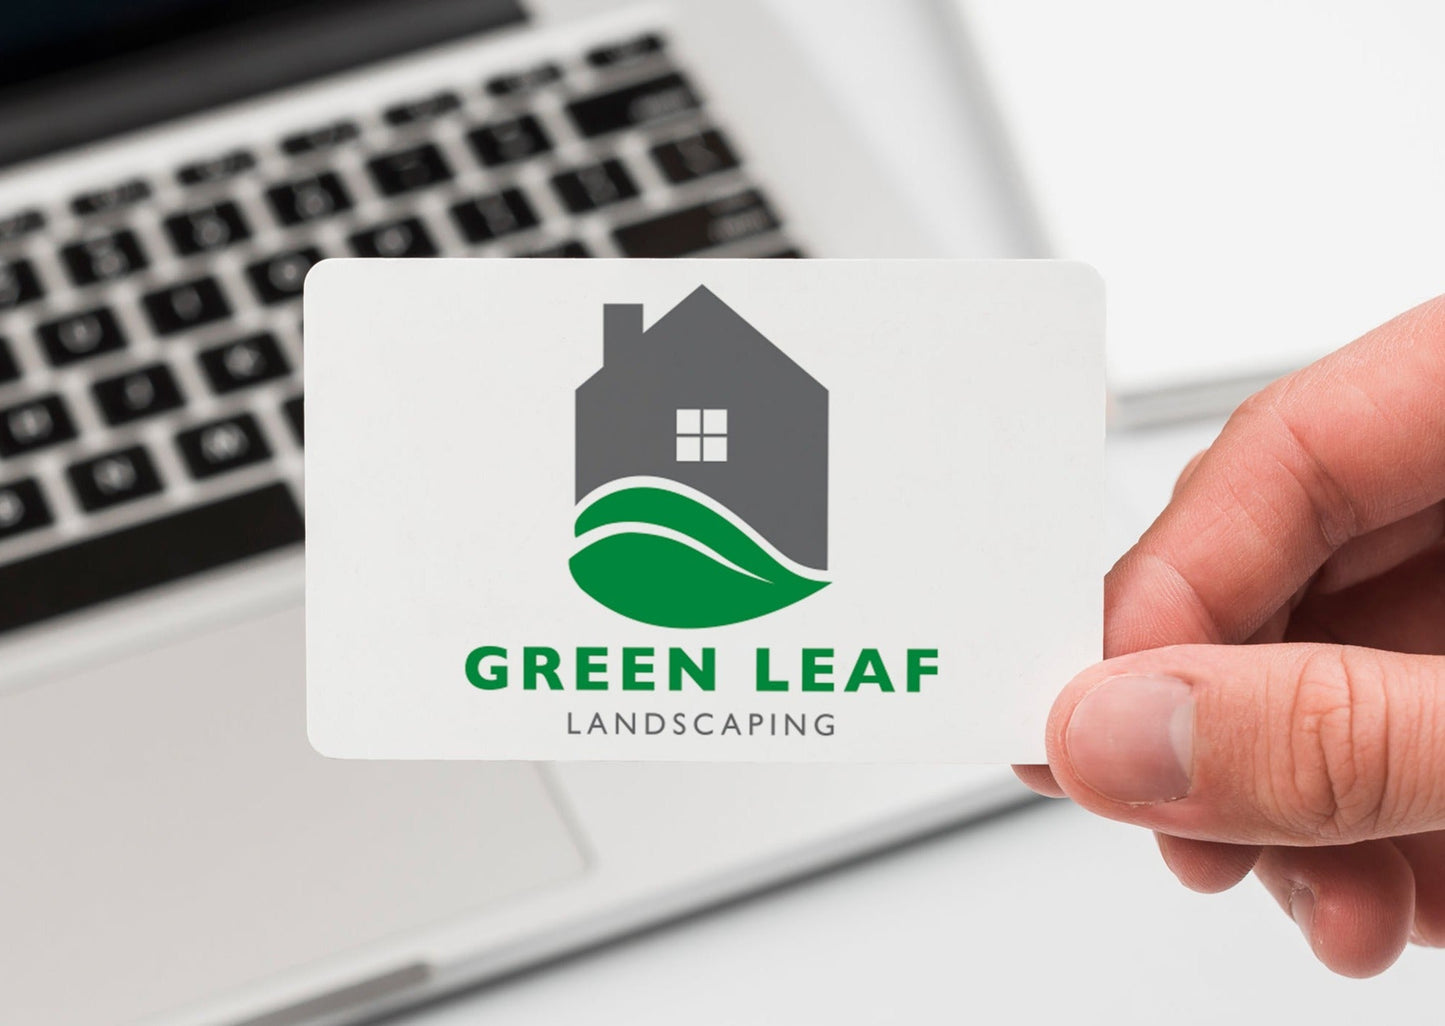 Landscape Logo | Landscaping Logo | Lawn Care Logo | Landscaper Logo | Professional Logo Design | Lawn Maintenance | Leaf Logo